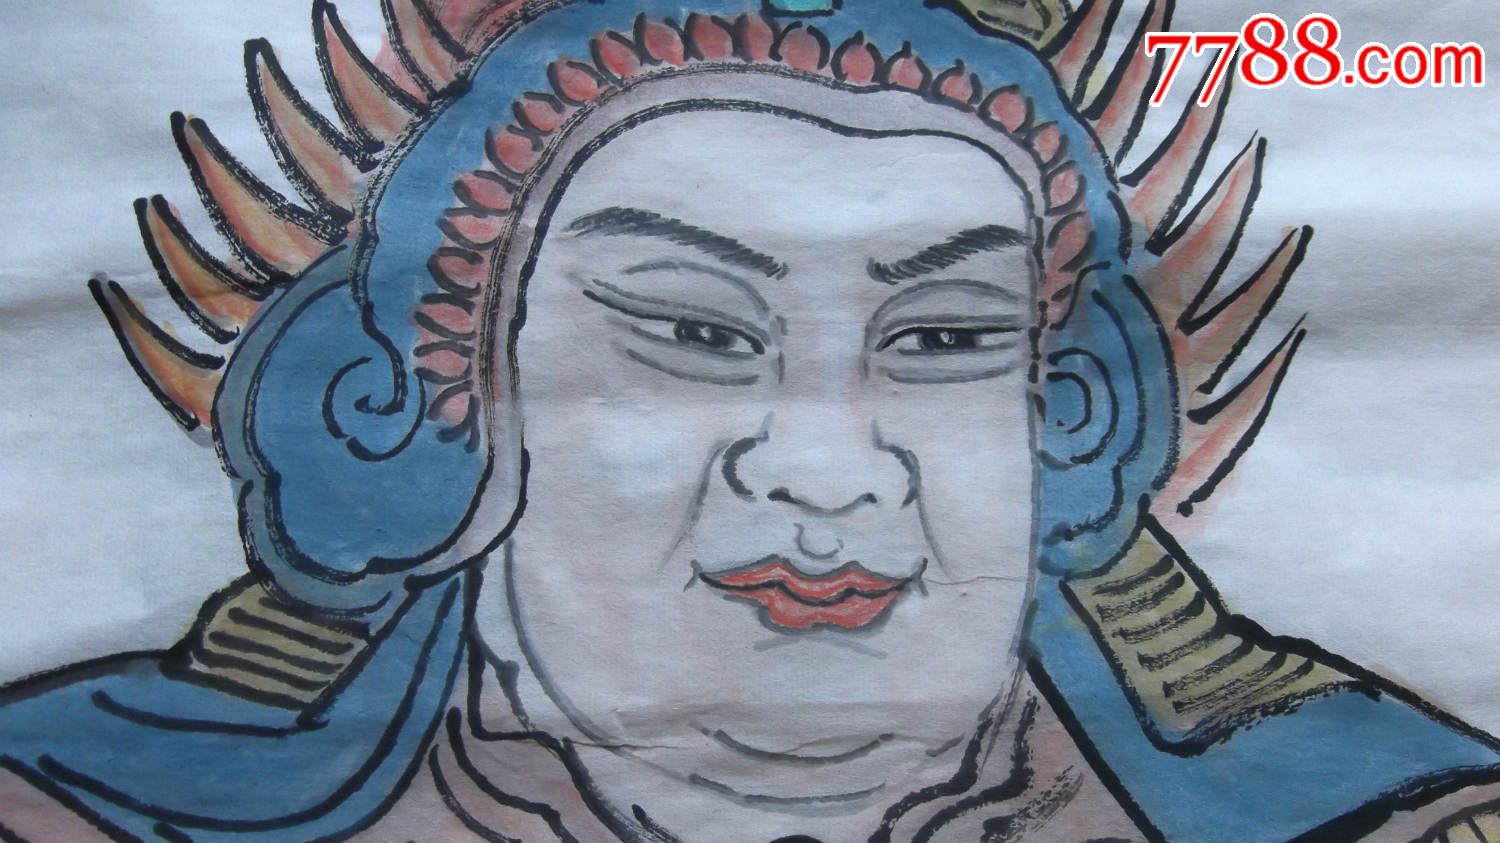 神像韦陀菩萨画像,尺寸大,包纯手工创作画,工笔重彩人物国画